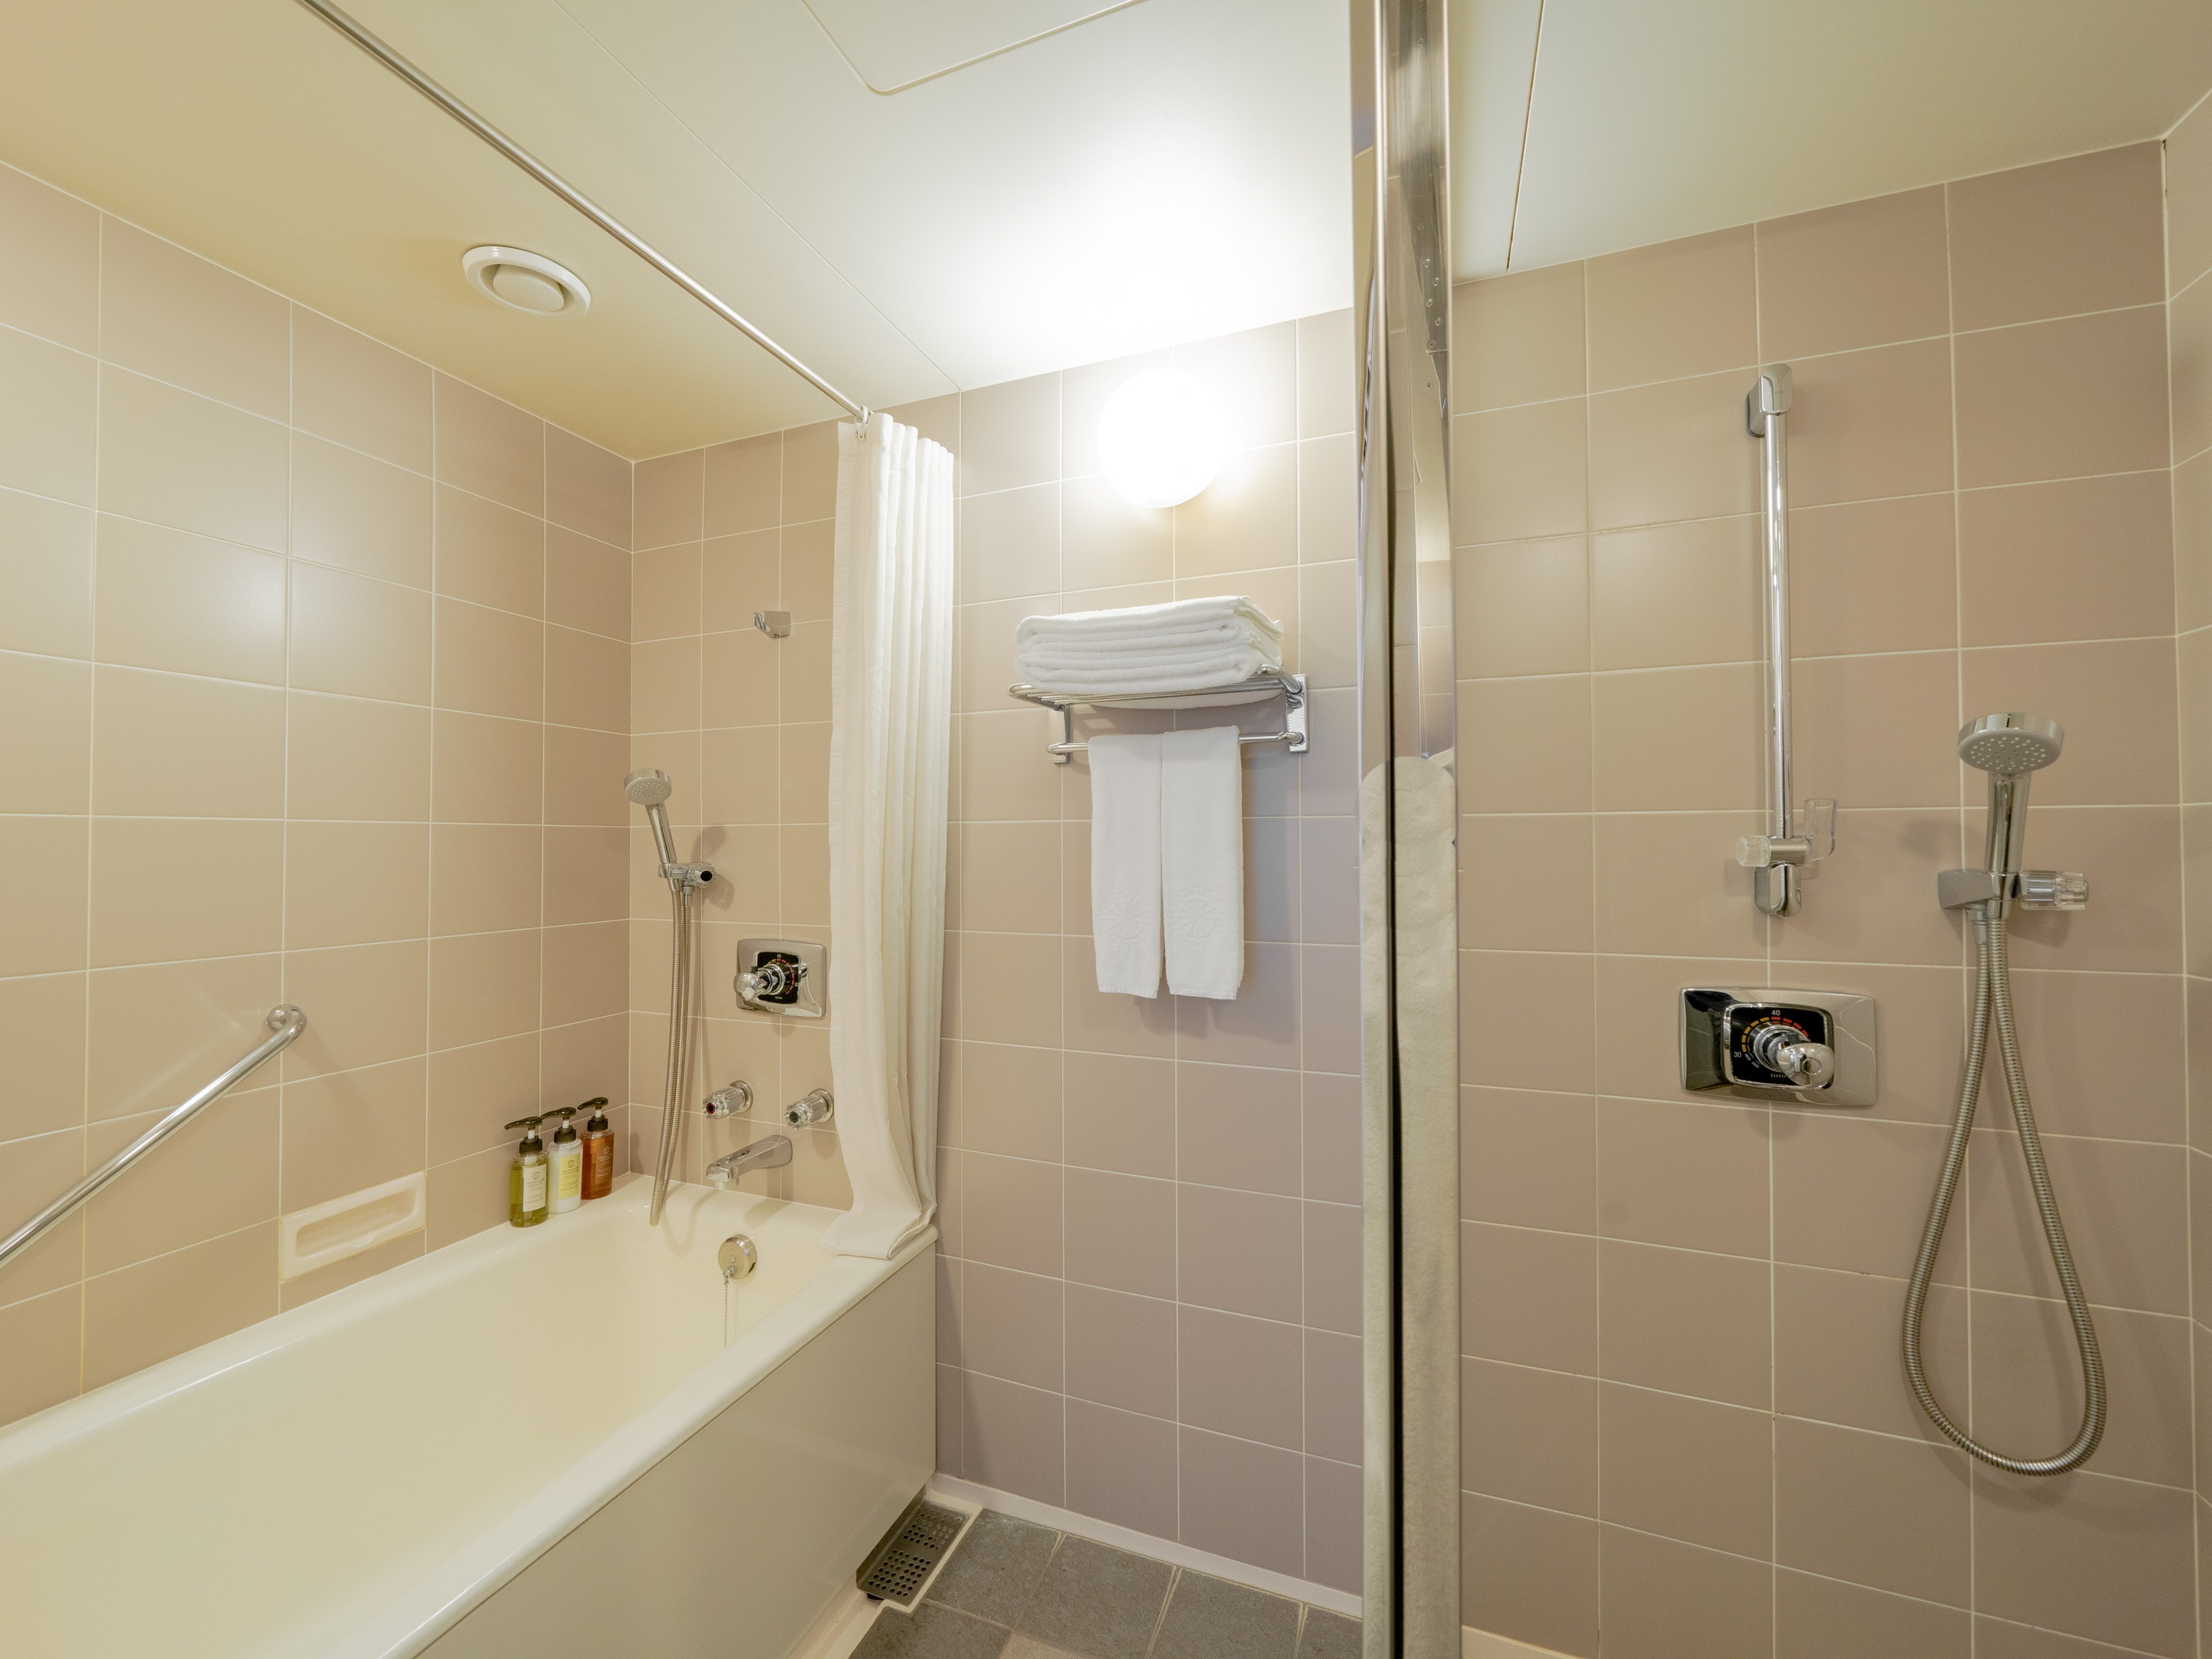 Kamar mandi dengan bilik shower untuk kenyamanan dan fungsionalitas